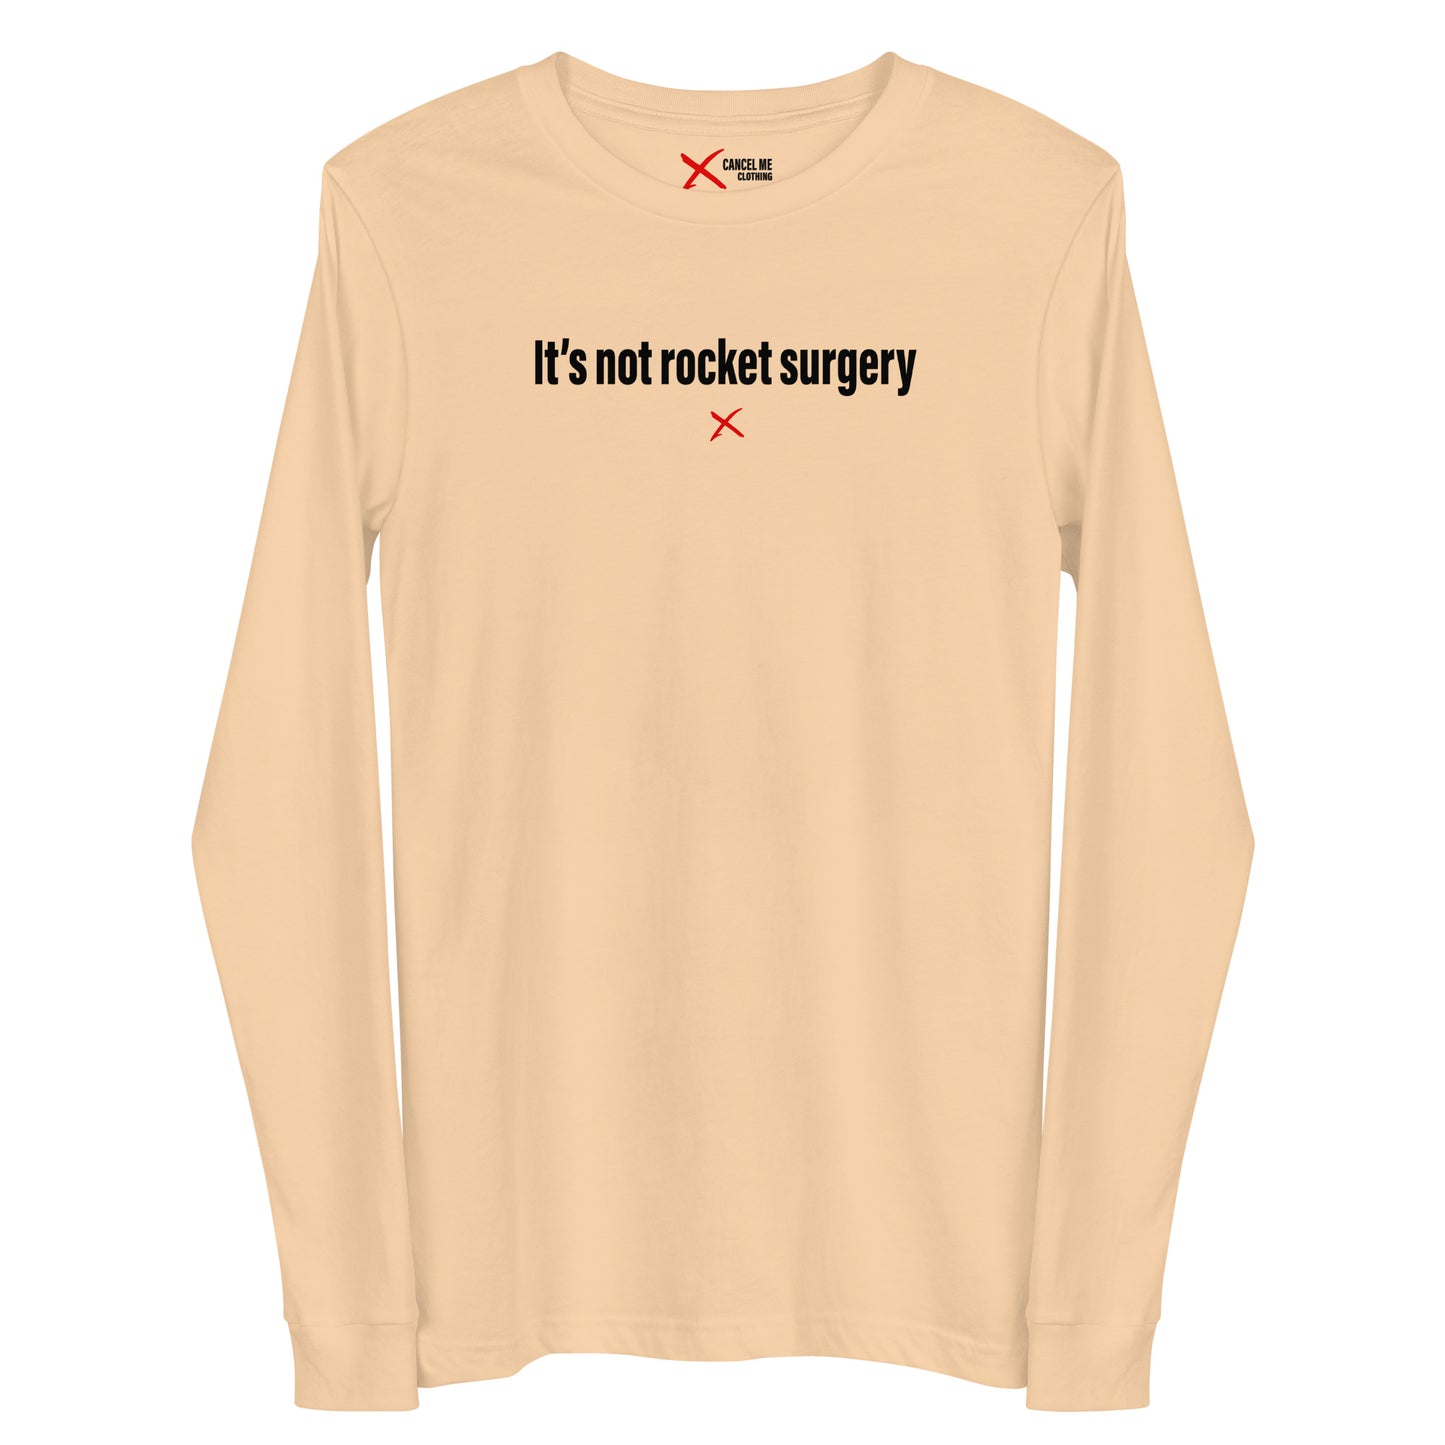 It's not rocket surgery - Longsleeve